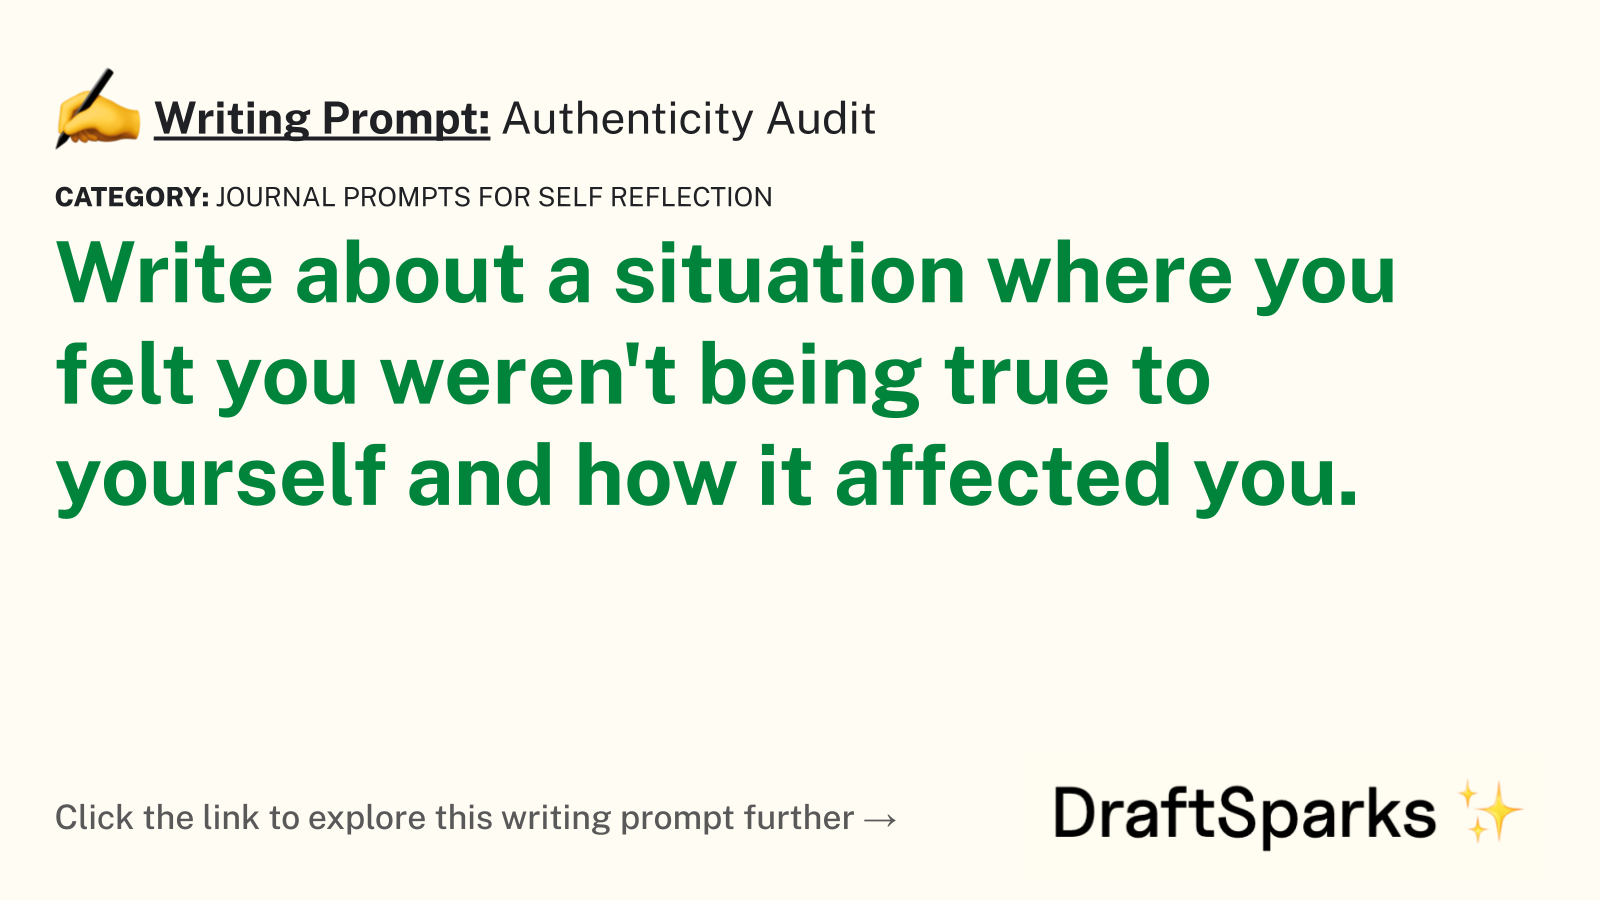 Authenticity Audit